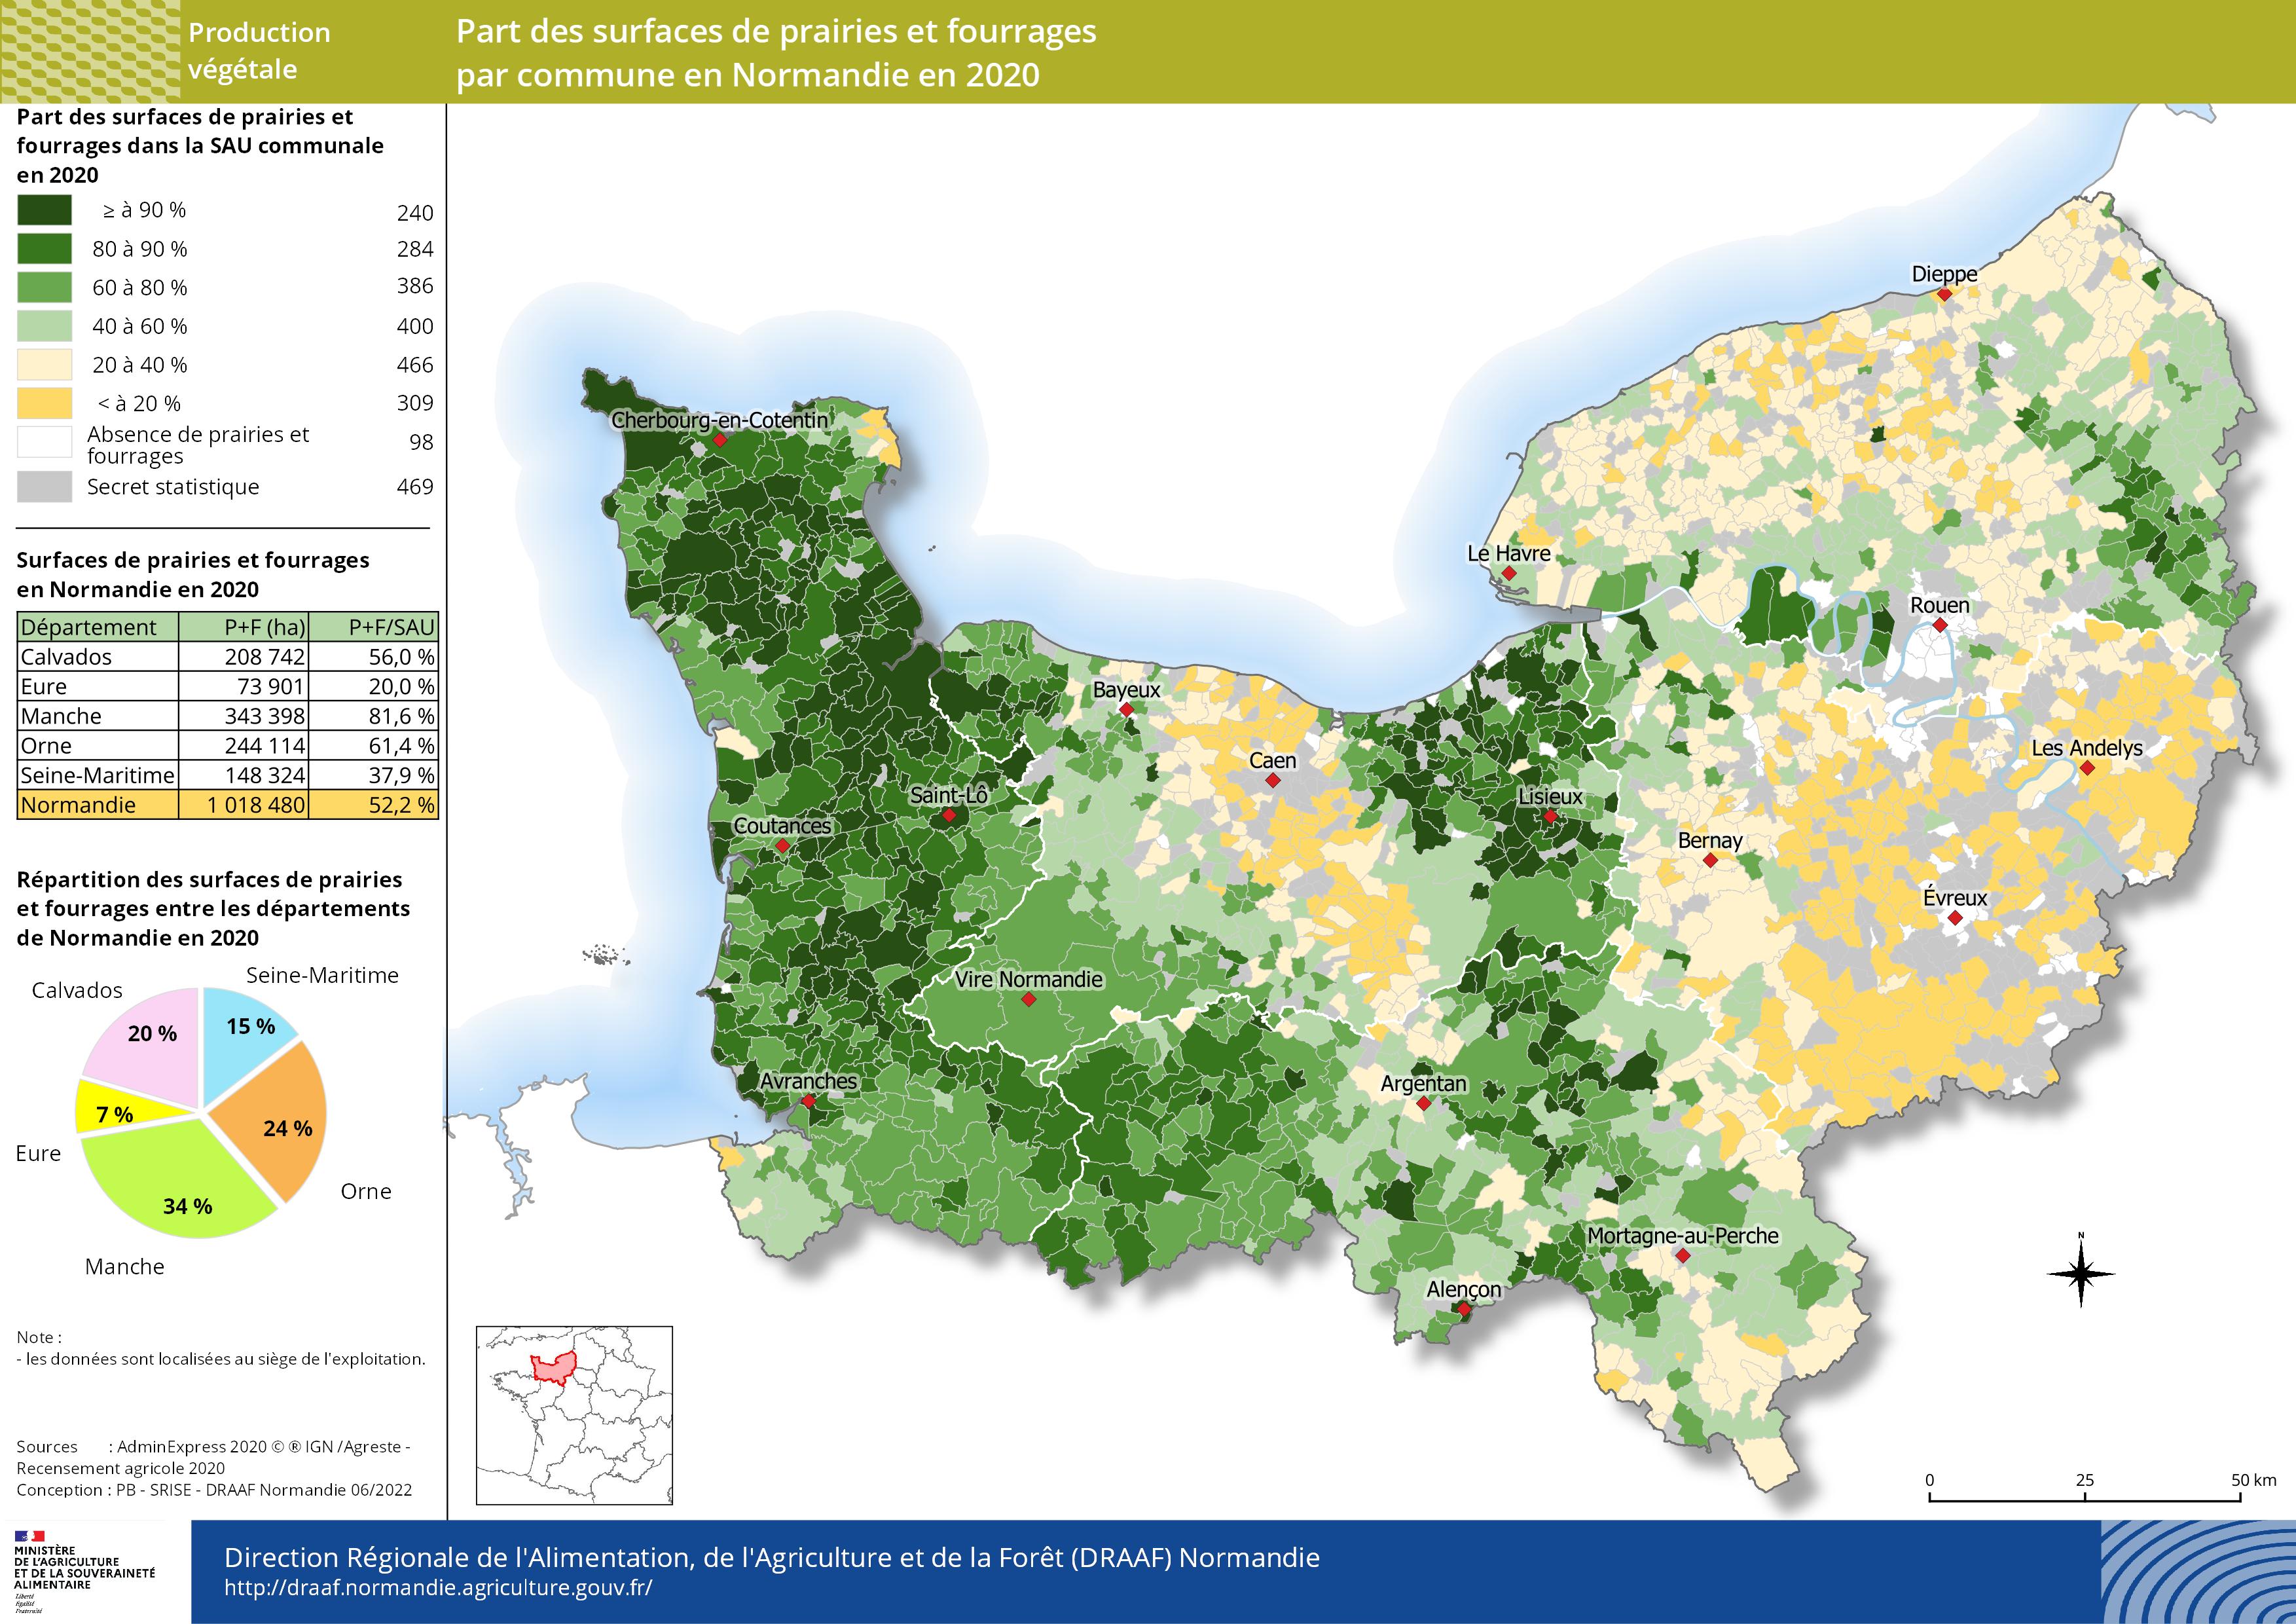 carte représentant la part des surfaces de prairies et fourrages par commune en Normandie en 2020